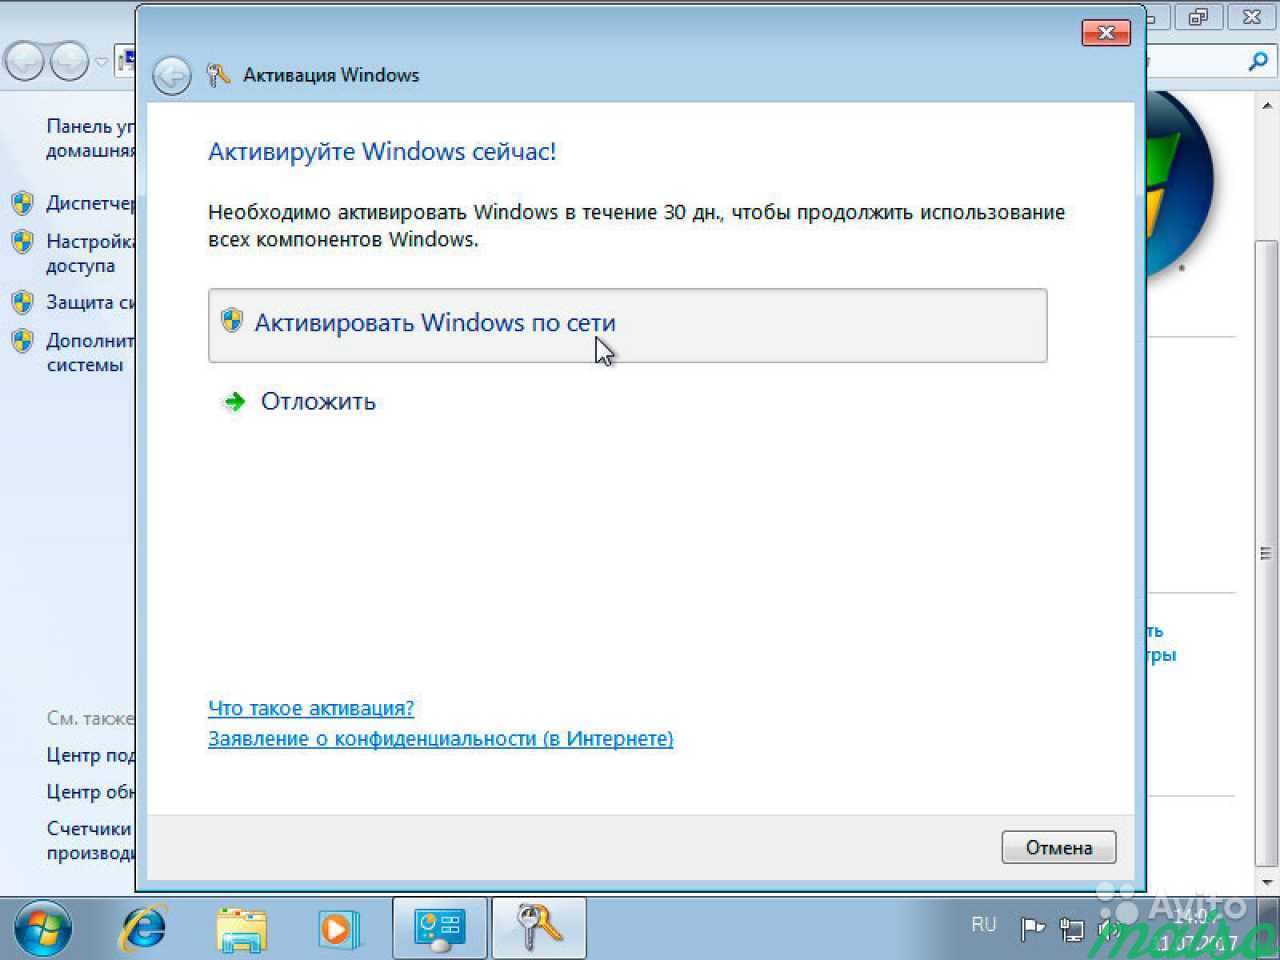 Активатор офиса для виндовс 7. Активации виндовс 7 ключ продукта. Активация виндовс 7. Активатор Windows 7. Как активировать виндовс 7.